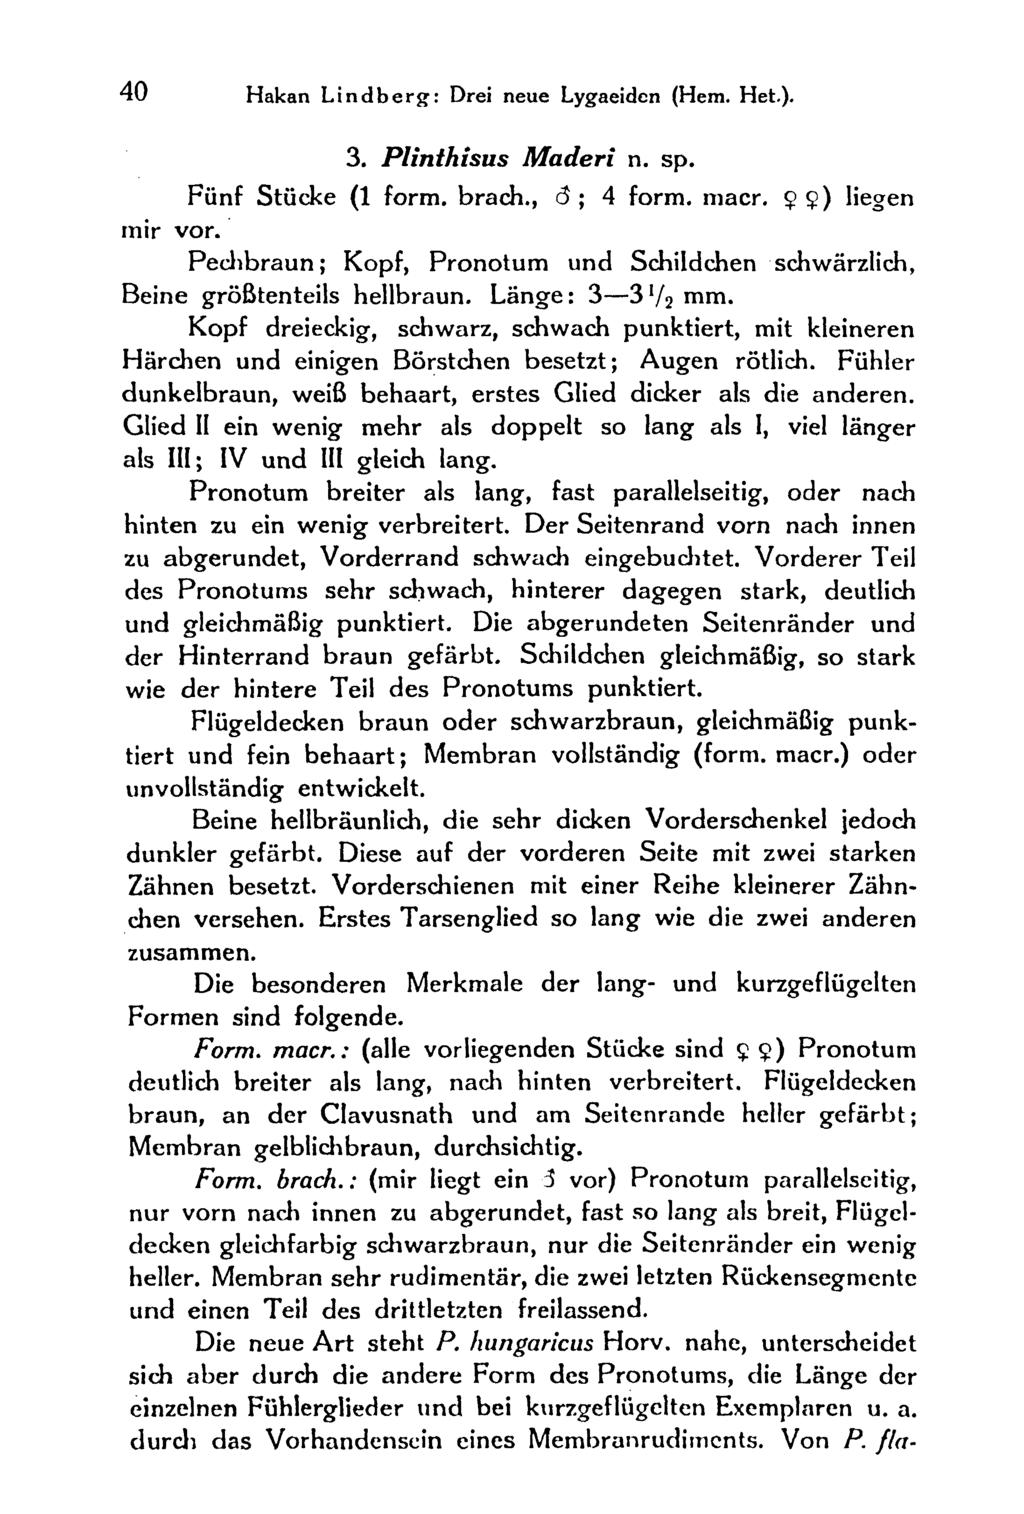 40 Hakan Lindberg: Drei neue Lygaeiden (Hern. Heb). 3. Plinthisus Maderi n. sp. Fünf Stücke (1 form, brach., d ; 4 form. macr. $) liegen mir vor.